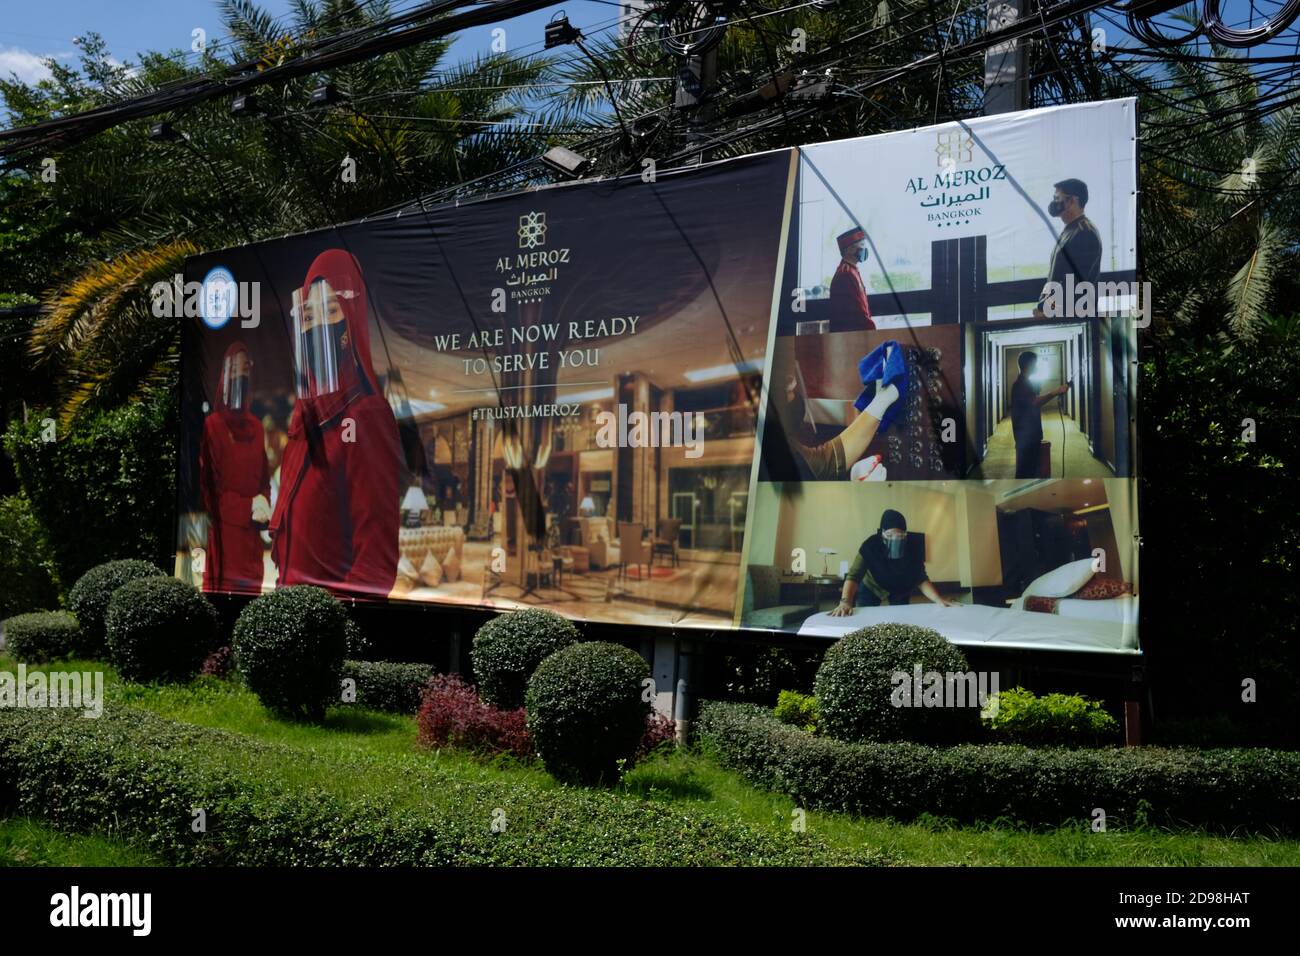 Publicidad para un hotel, mostrando las medidas adoptadas para reabrir en la pandemia de COVID, Bangkok, Tailandia Foto de stock